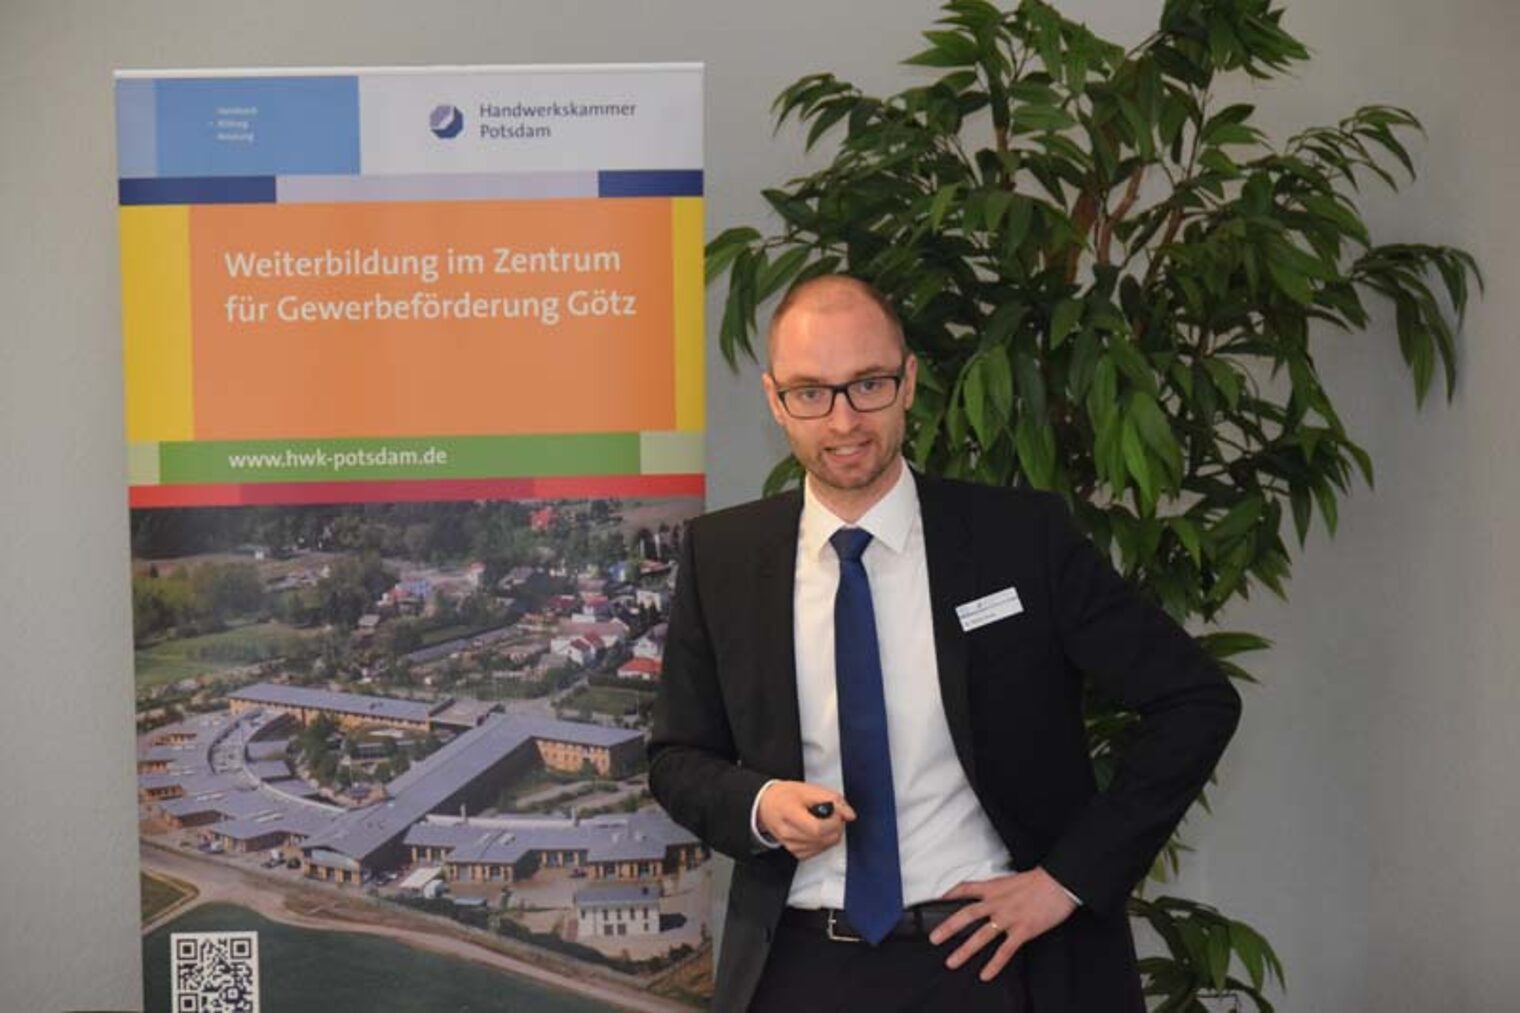 Dr.-Ing. René Hönig, Teamleiter "Kompetenzzentrum für Energiespeicherung und Energiesystemmanagement" 